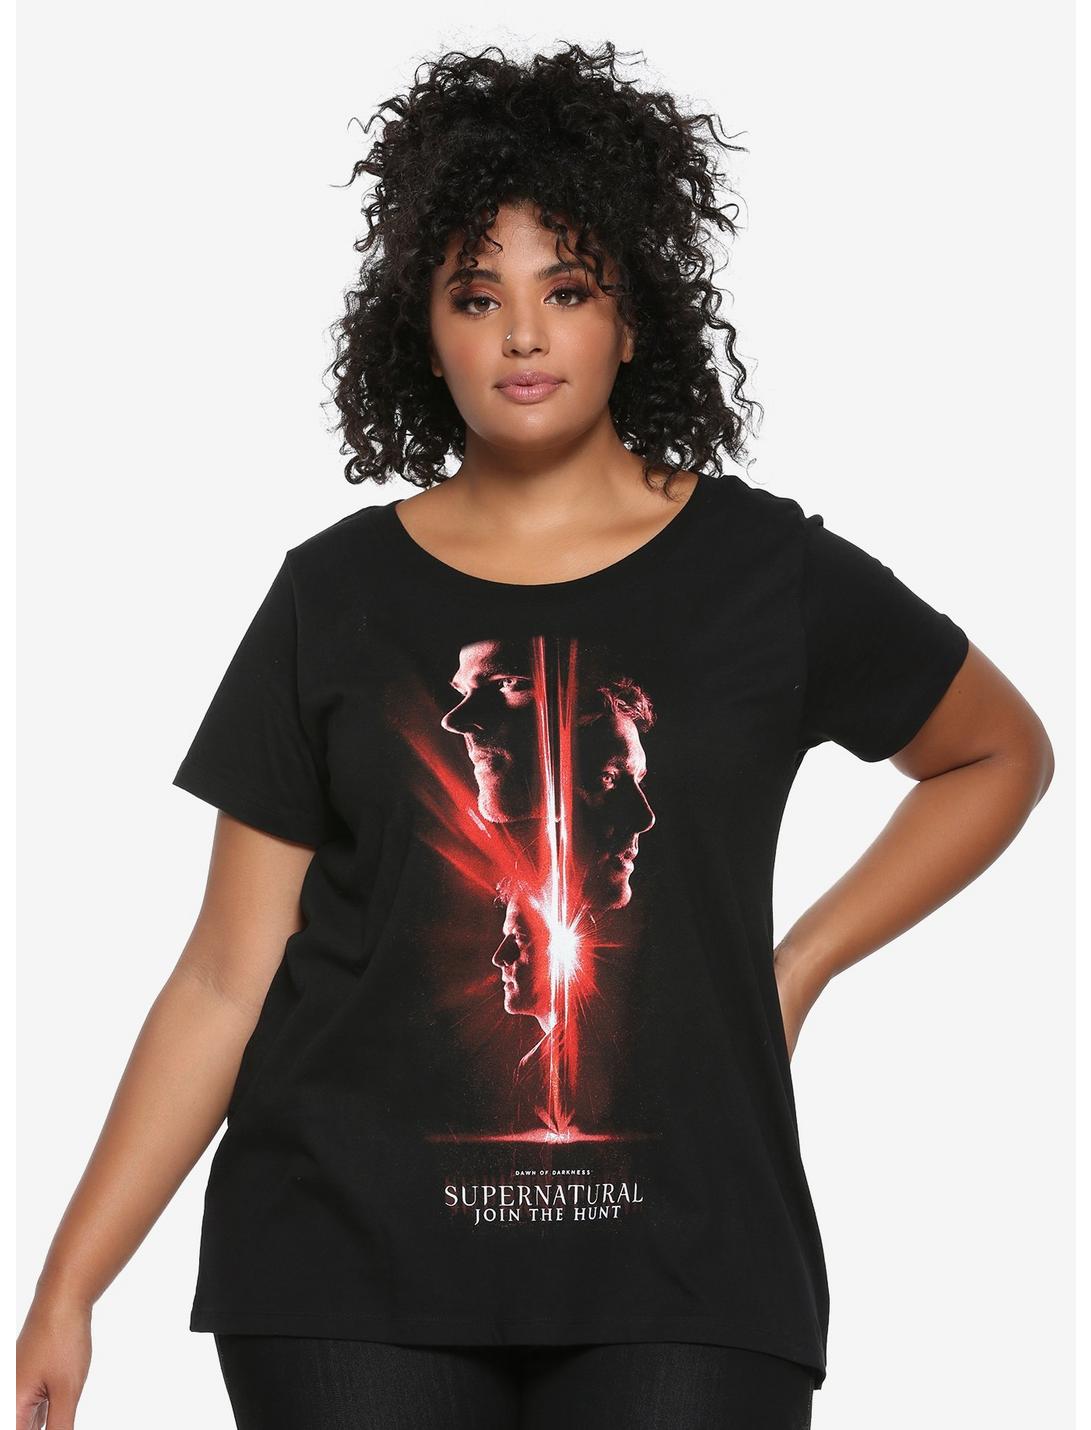 Supernatural Season 13 Poster Girls T-Shirt Plus Size, RED, hi-res